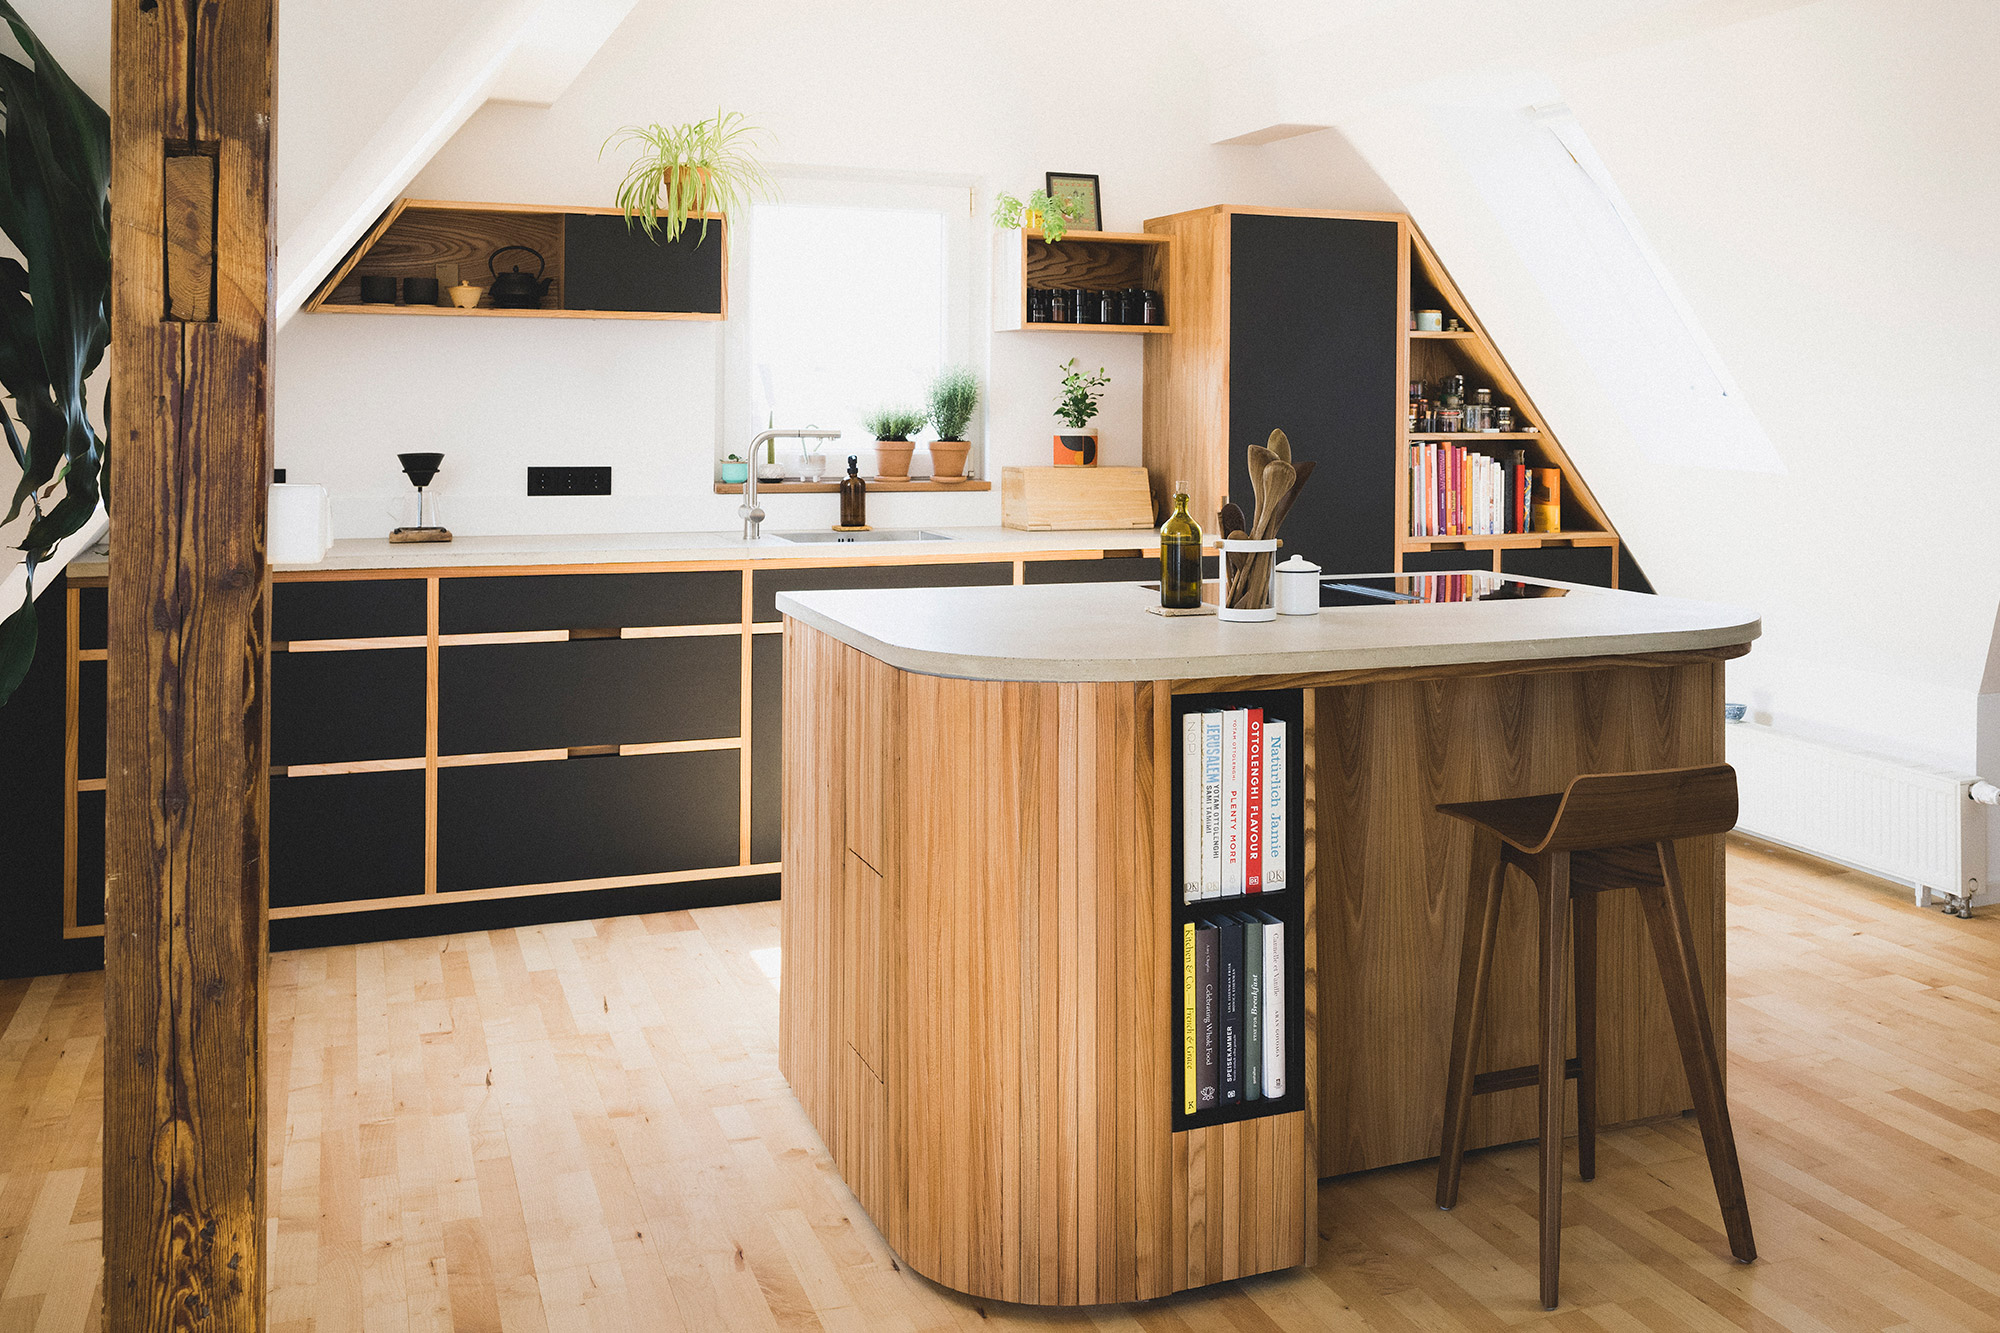 renovierte Küche nach Maß in Holz und Terrazzo in einer renovierten Wohnung in Nürnberg 